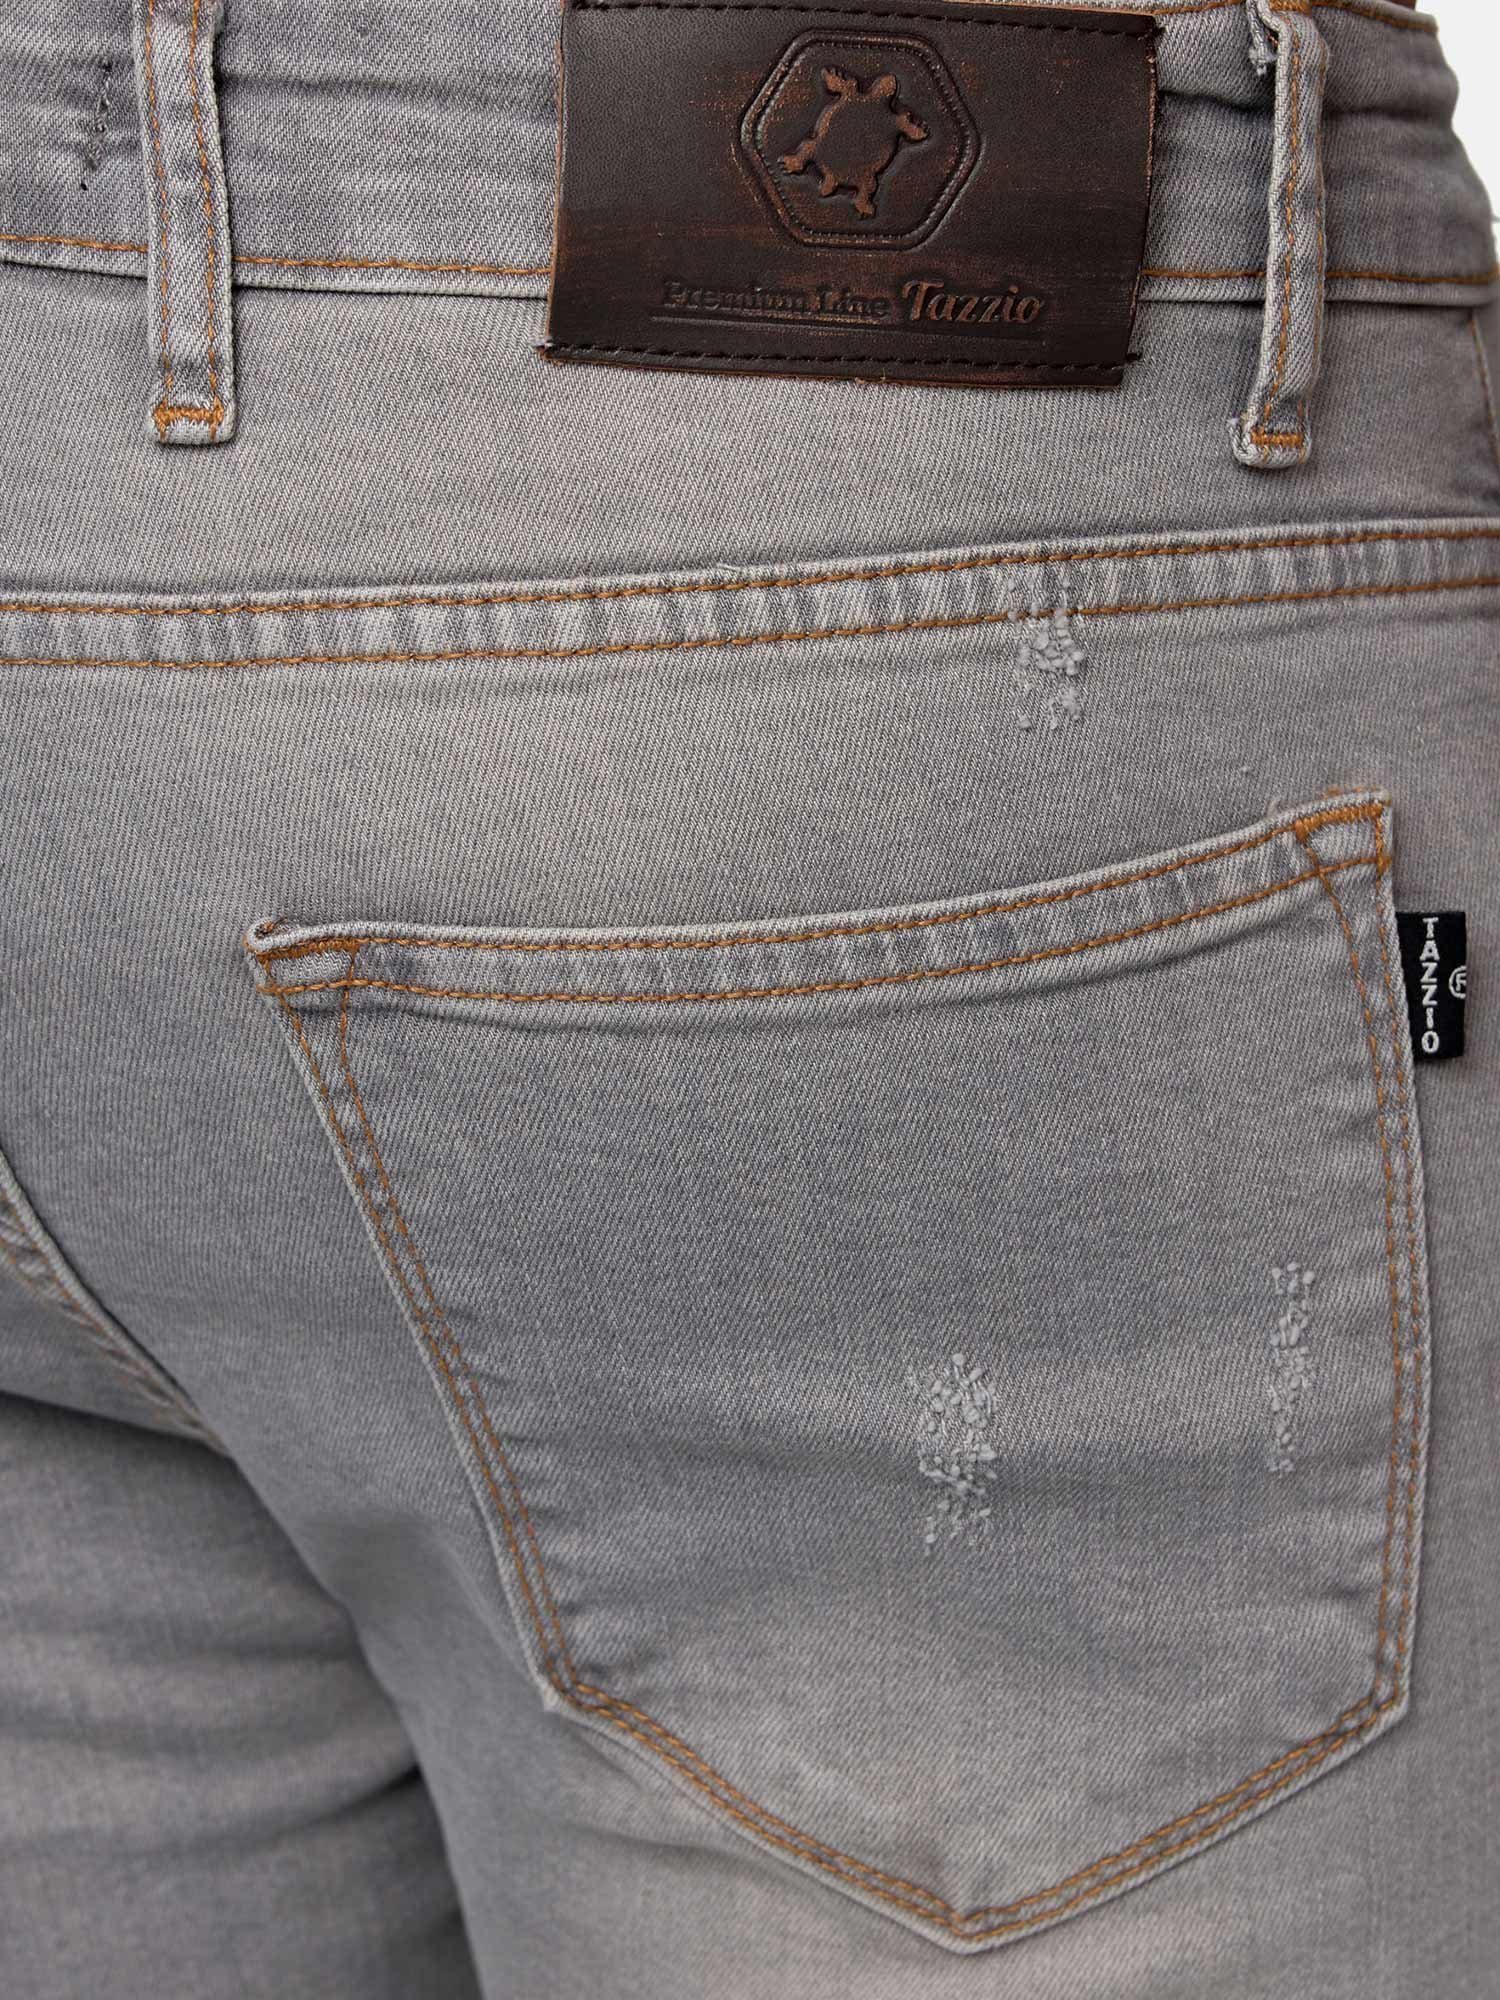 Destroyed-Look im grau Tazzio Skinny-fit-Jeans 17514